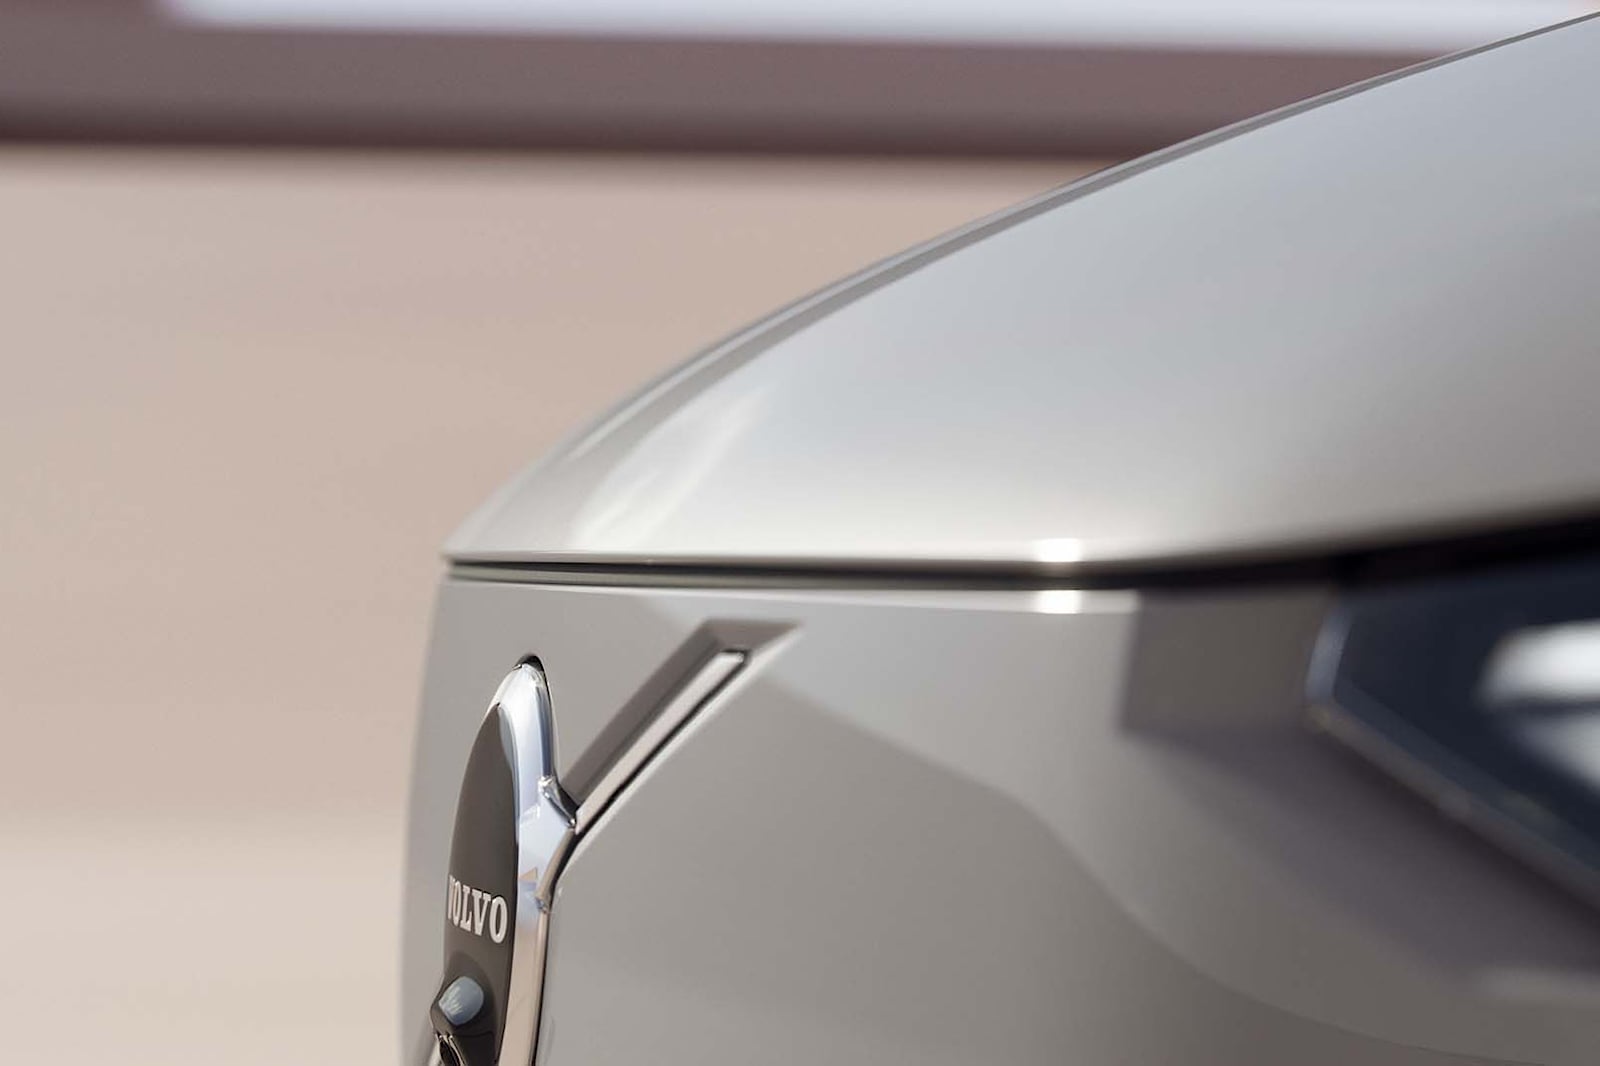 Кроме того, мы уже знаем, как будет выглядеть автомобиль, по крайней мере, предположительно, благодаря просочившимся патентам EX90. Стиль от Concept Recharge будет сильно вдохновлять автомобиль.